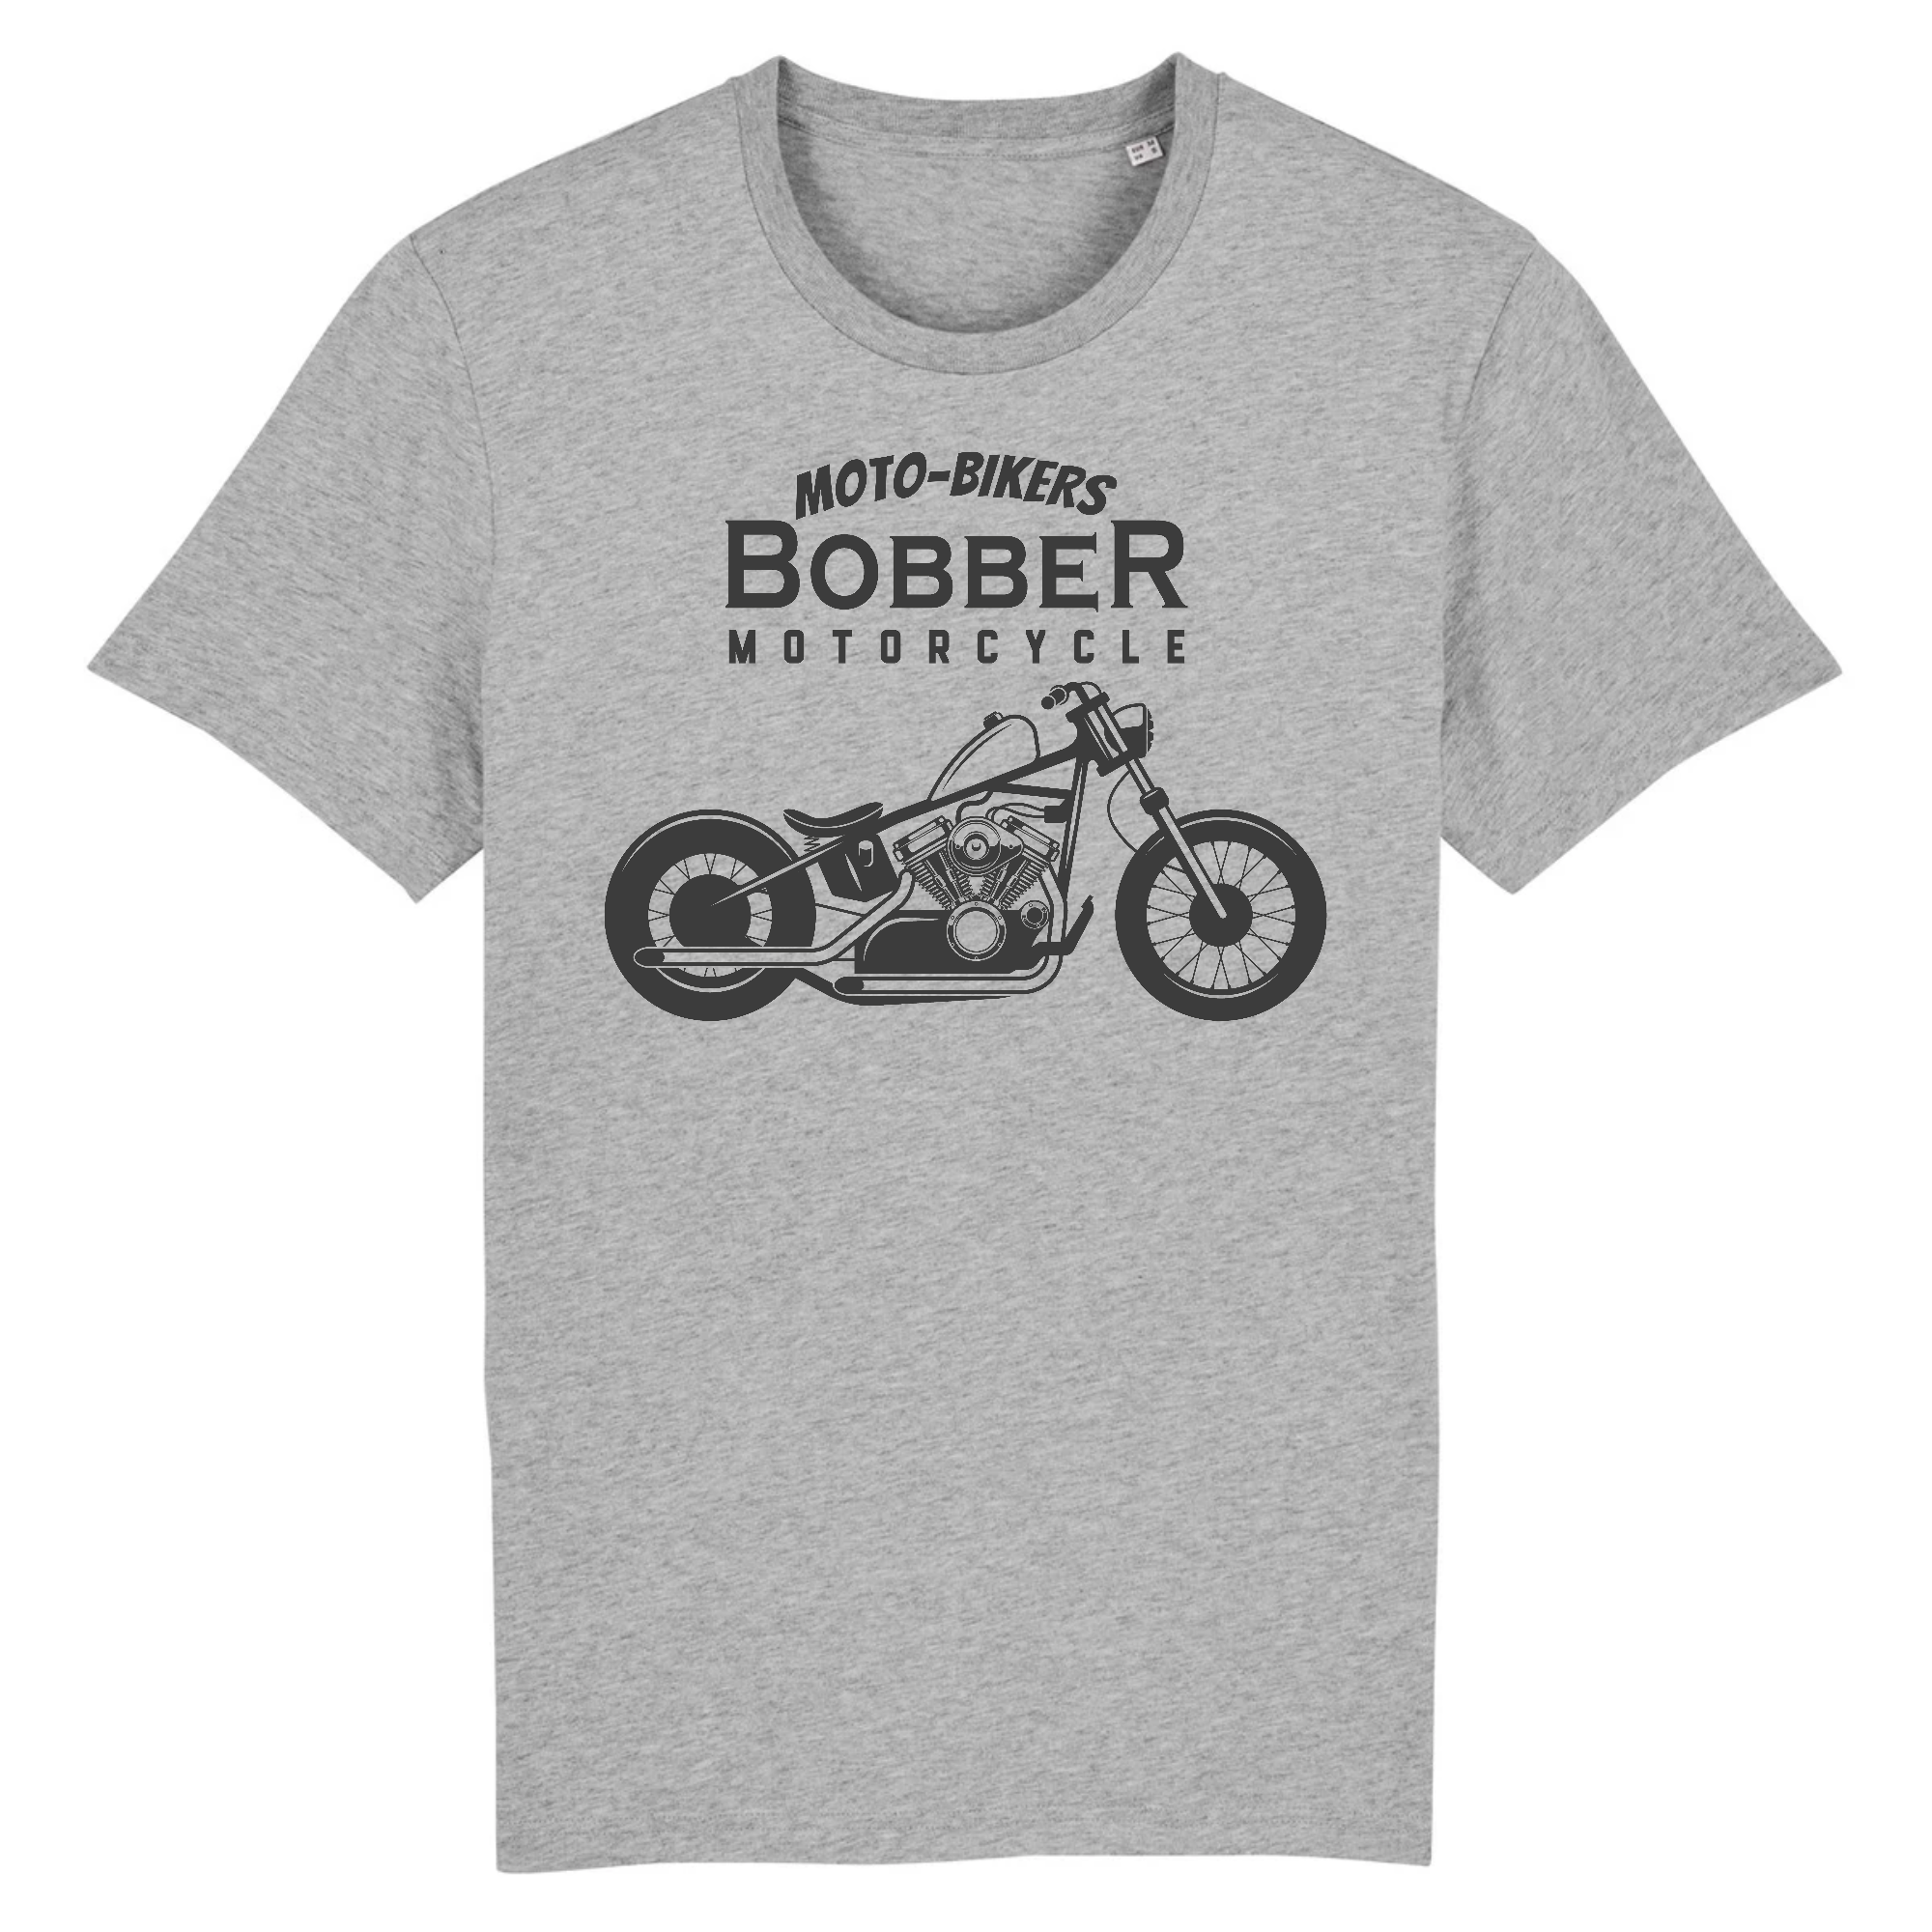 T-Shirt Motard Personnalisable | Remplacez les textes et numéros, tee shirt  moto personnalisé | crew logo dos, chapter, motorcycle club